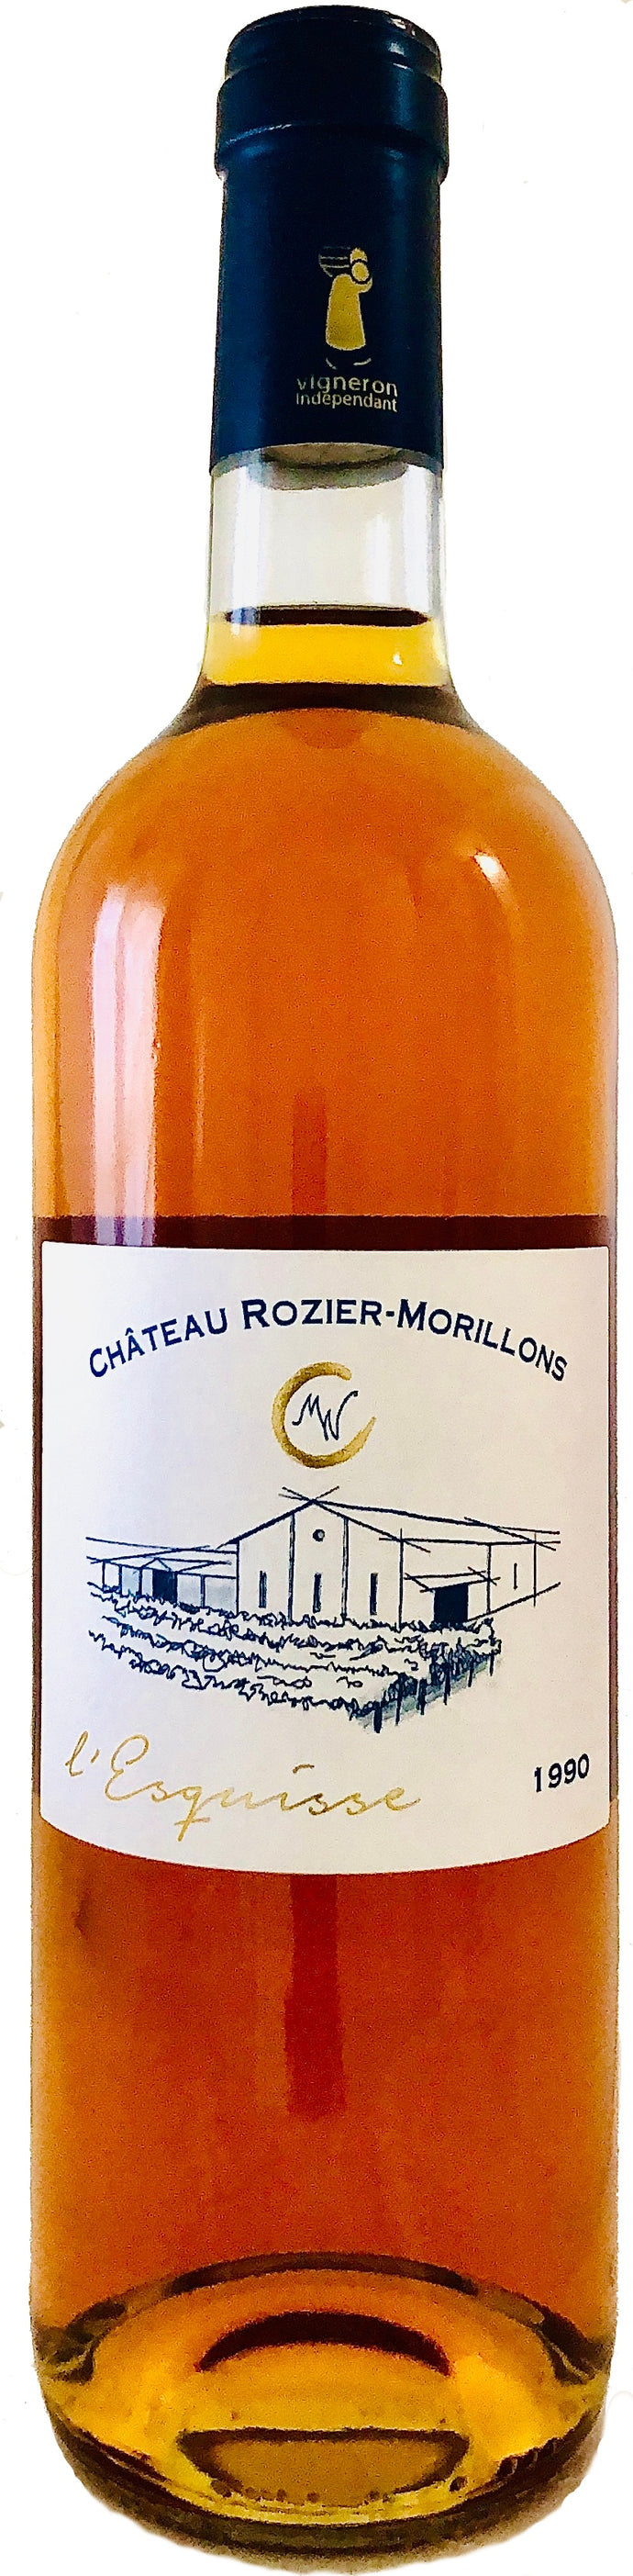 Château ROZIER-MORILLONS AOC PREMIÈRES CÔTES DE BORDEAUX – cuvée L’esquisse - 1990 – 75 cL – Agriculture Raisonnée (CHR)